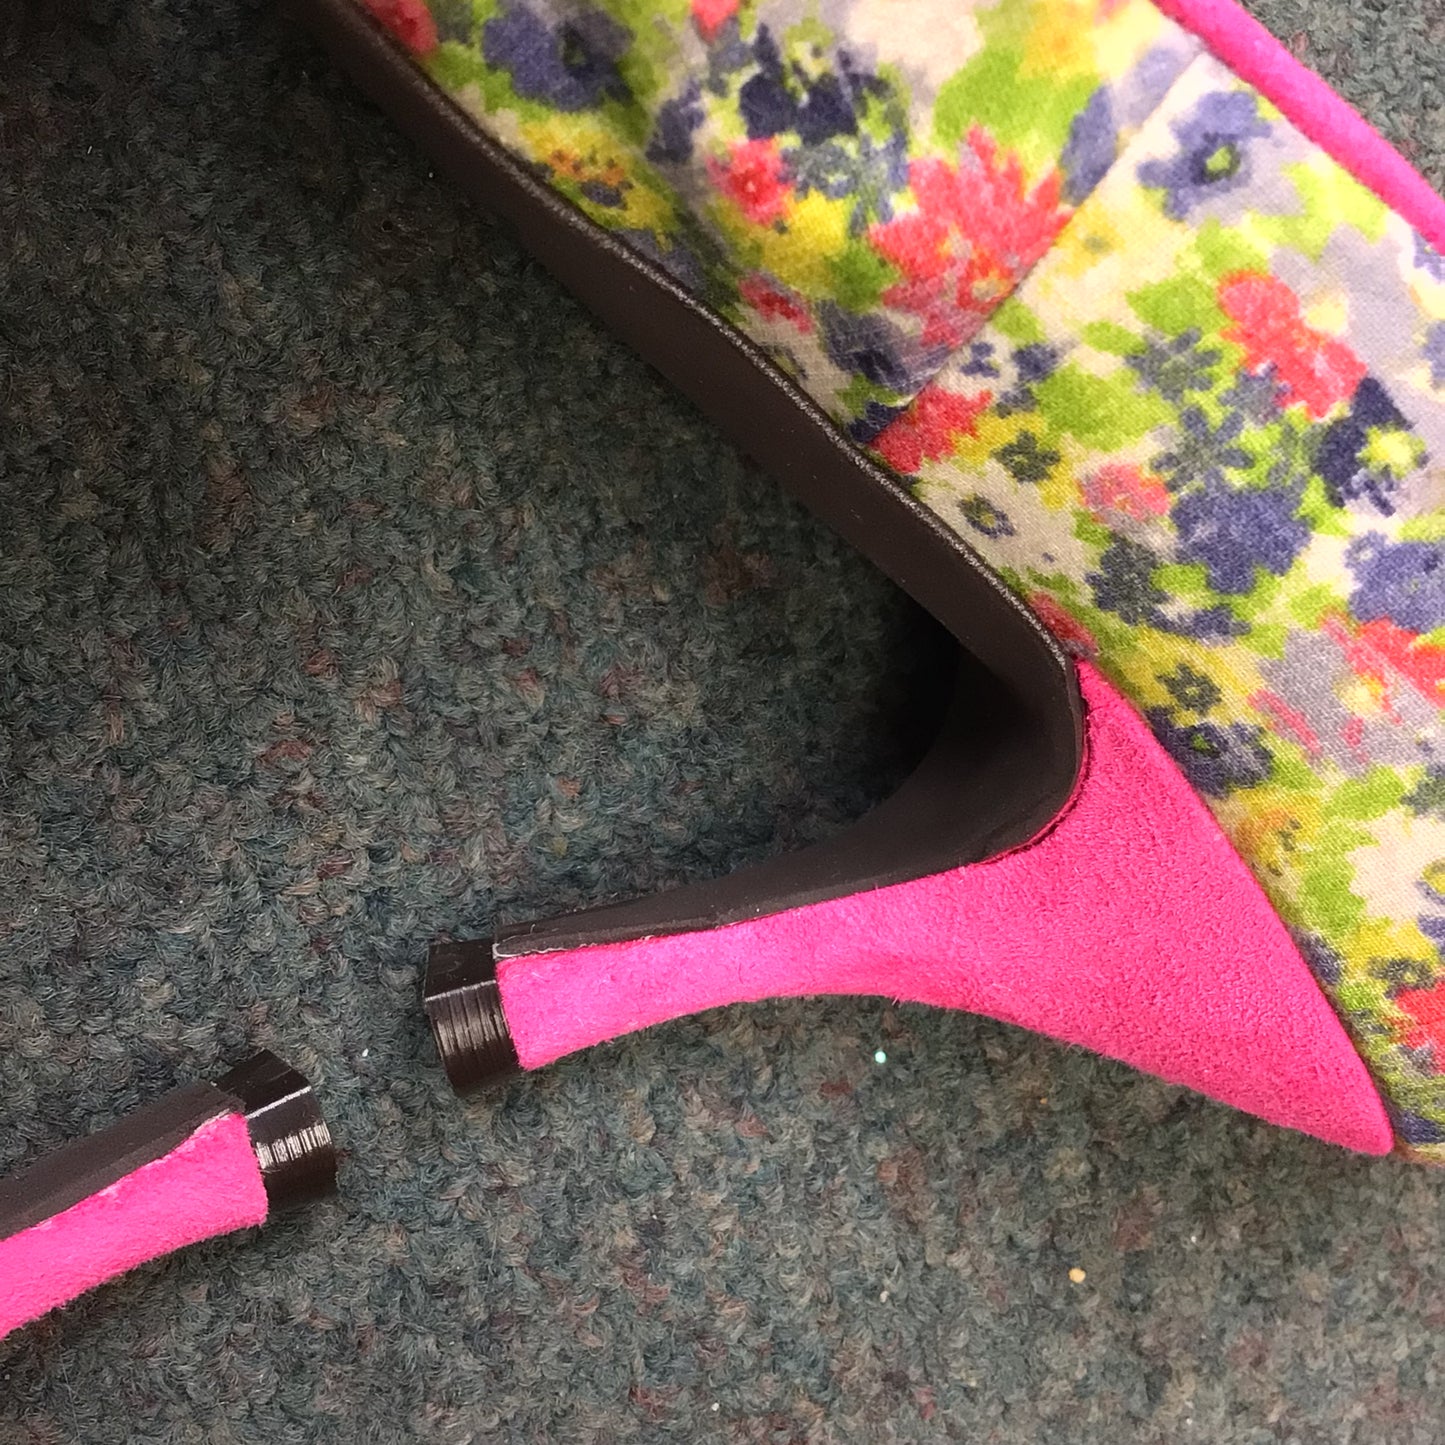 BNIB Helen Bateman Pink Floral Heels Size 35